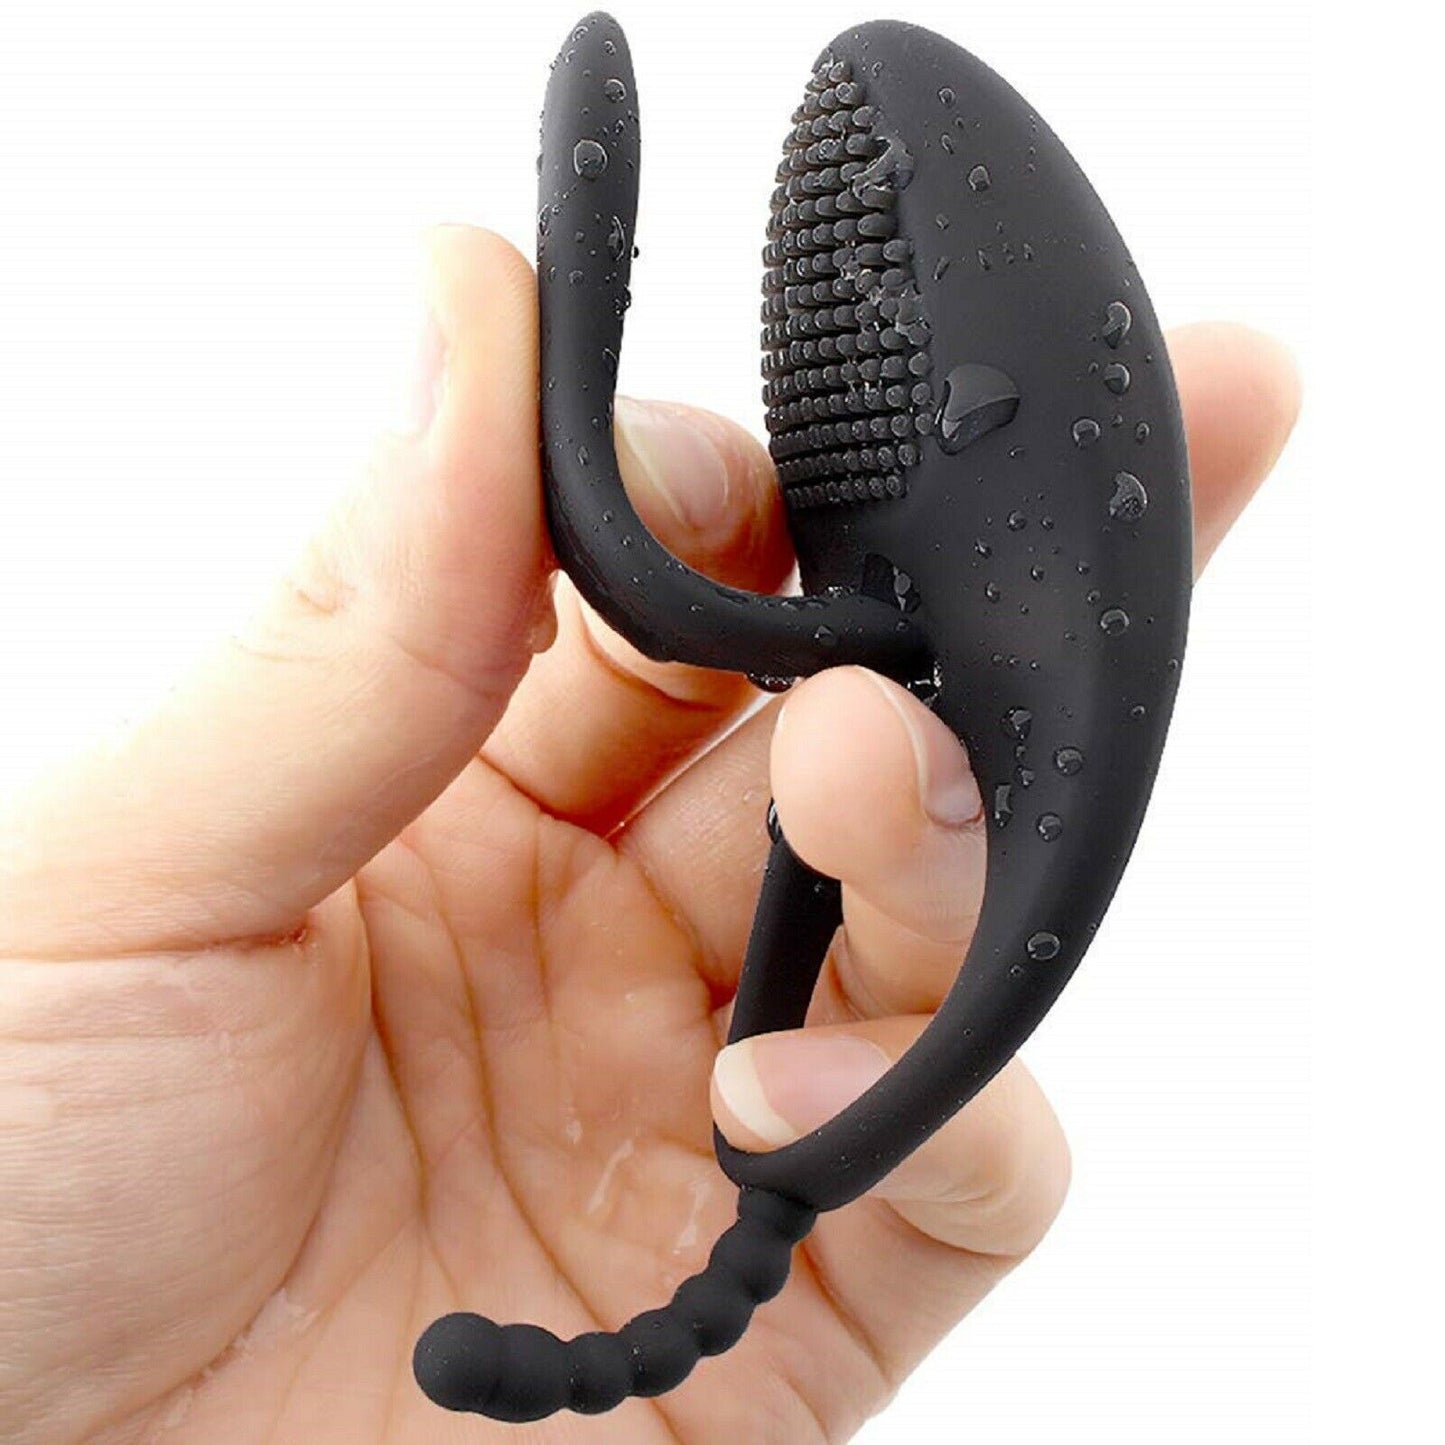 Vibrating Cock Ring Couples Vibe G-Spot Clit Penis Vibrator USB Massager Sex Toy